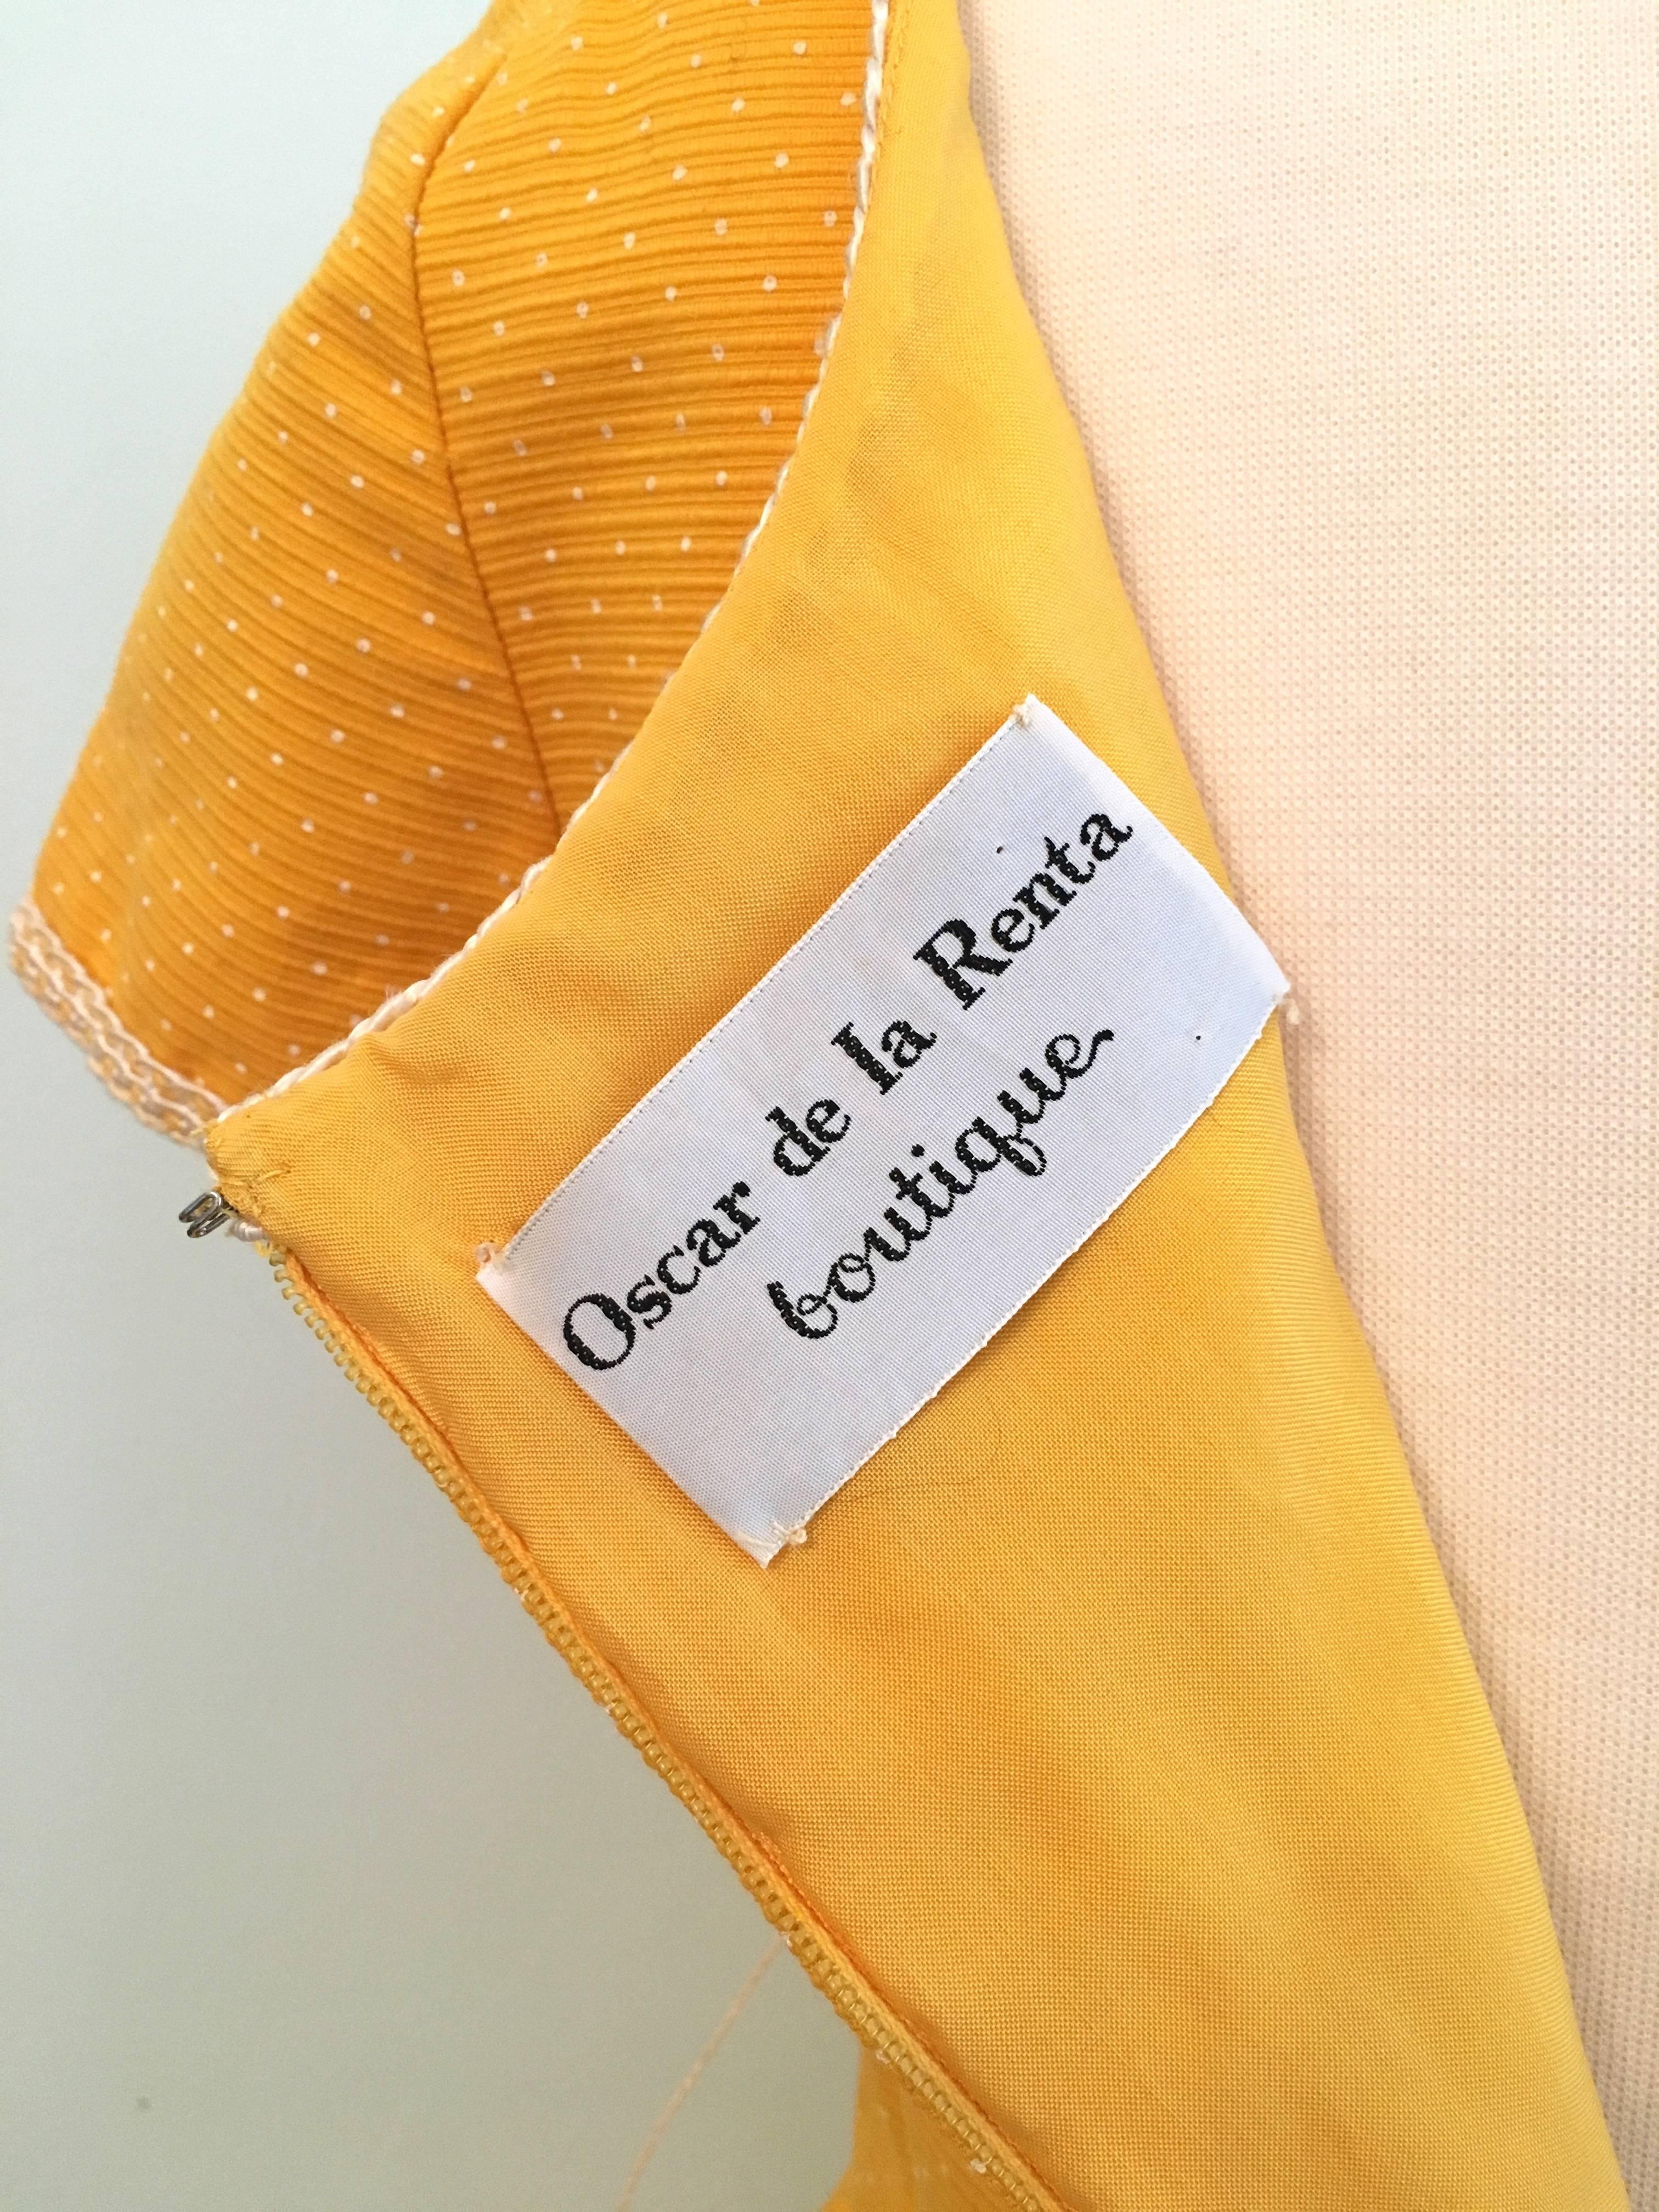 Oscar De La Renta Boutique Yellow Polka Dot Dress, 1960s  For Sale 5